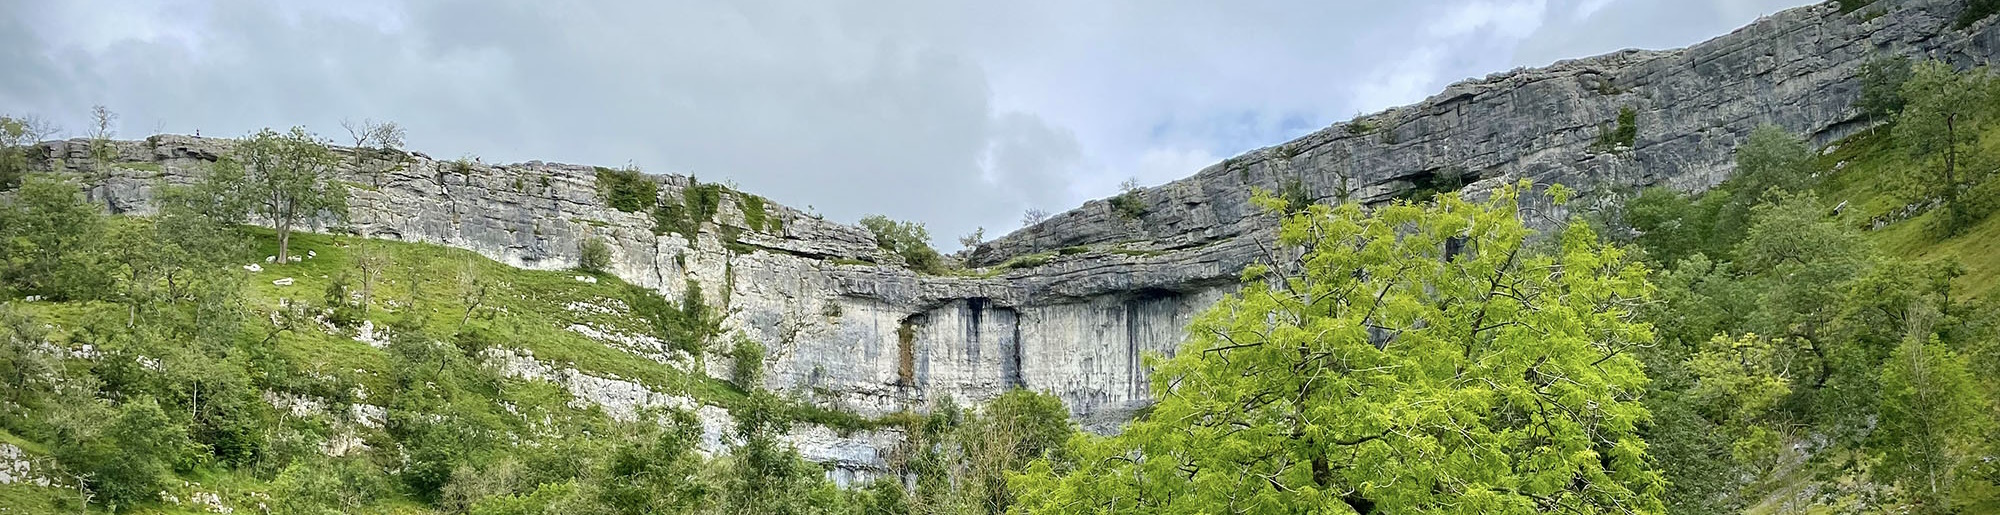 Malham cove waterfall